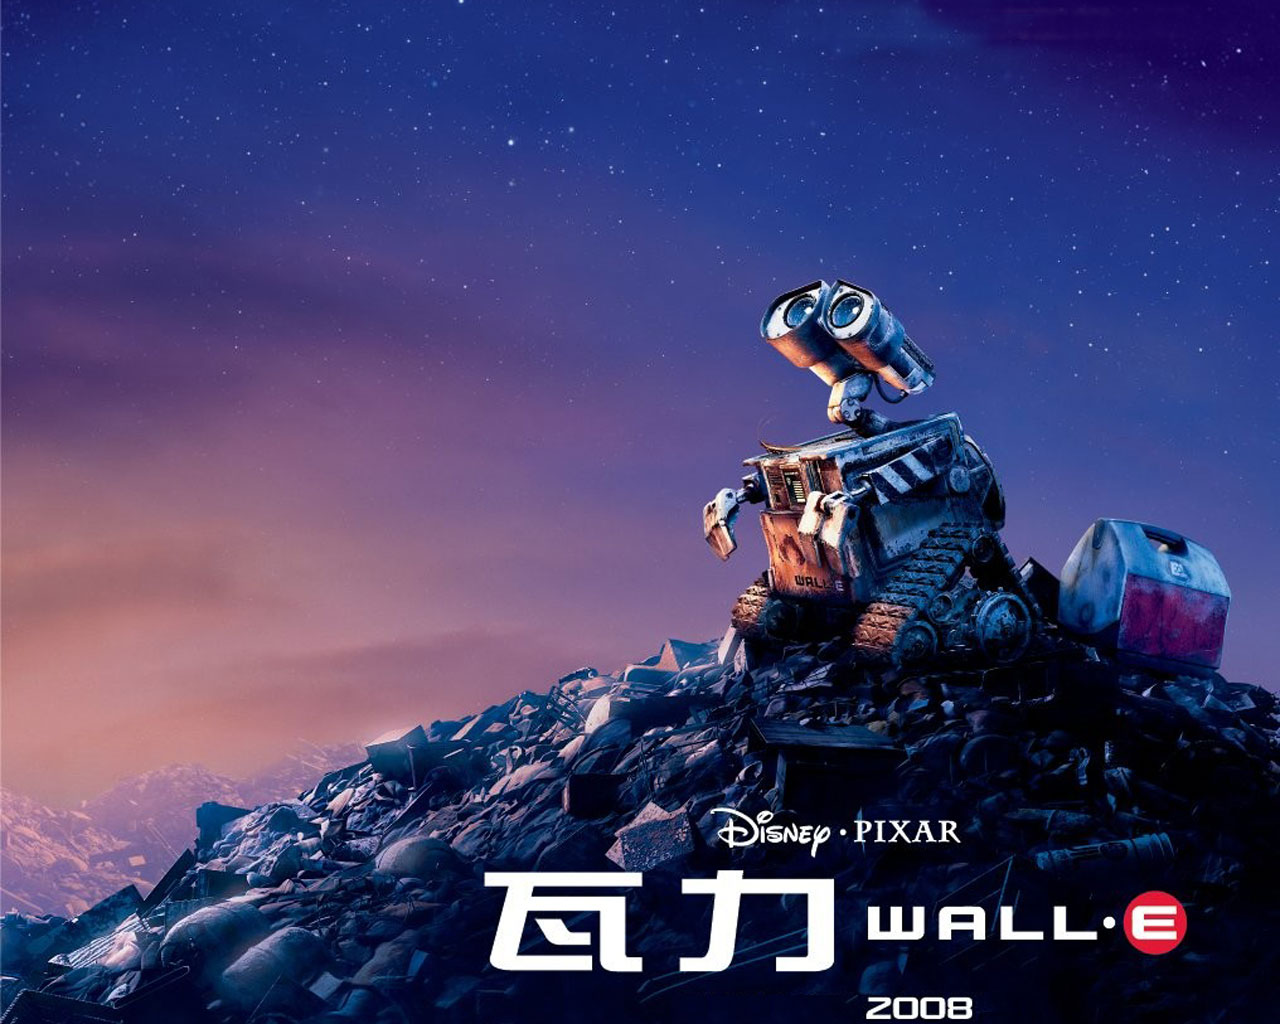 Fond d'ecran Affiche Wall-e Pixar